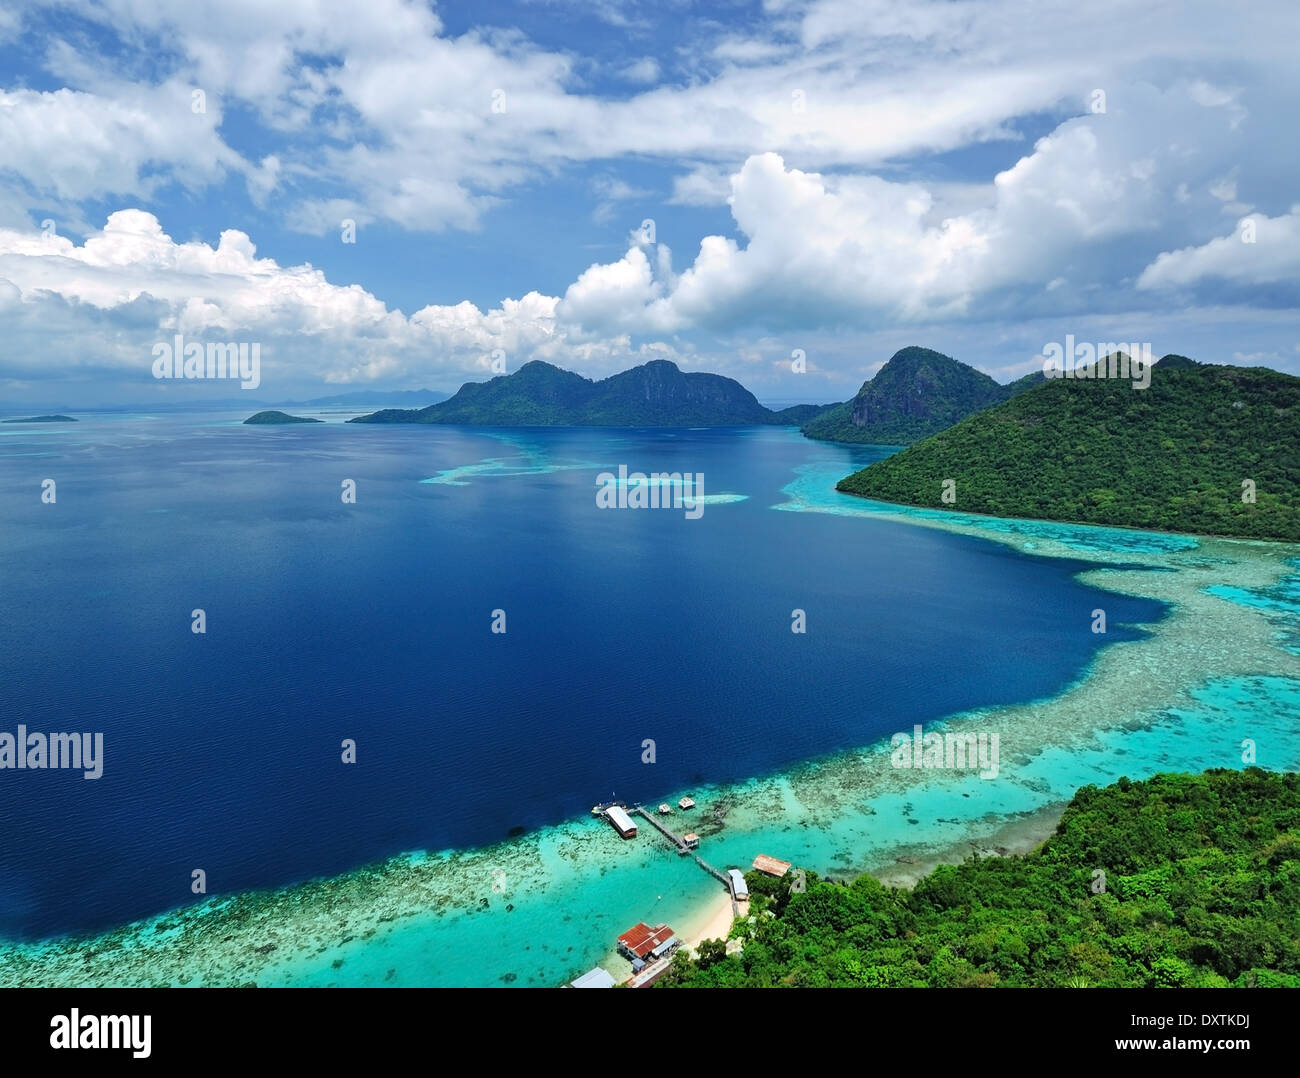 Malaysia Sabah Borneo Scenic aerial view of Tun Sakaran Marine Park tropical island Semporna, Sabah. Stock Photo